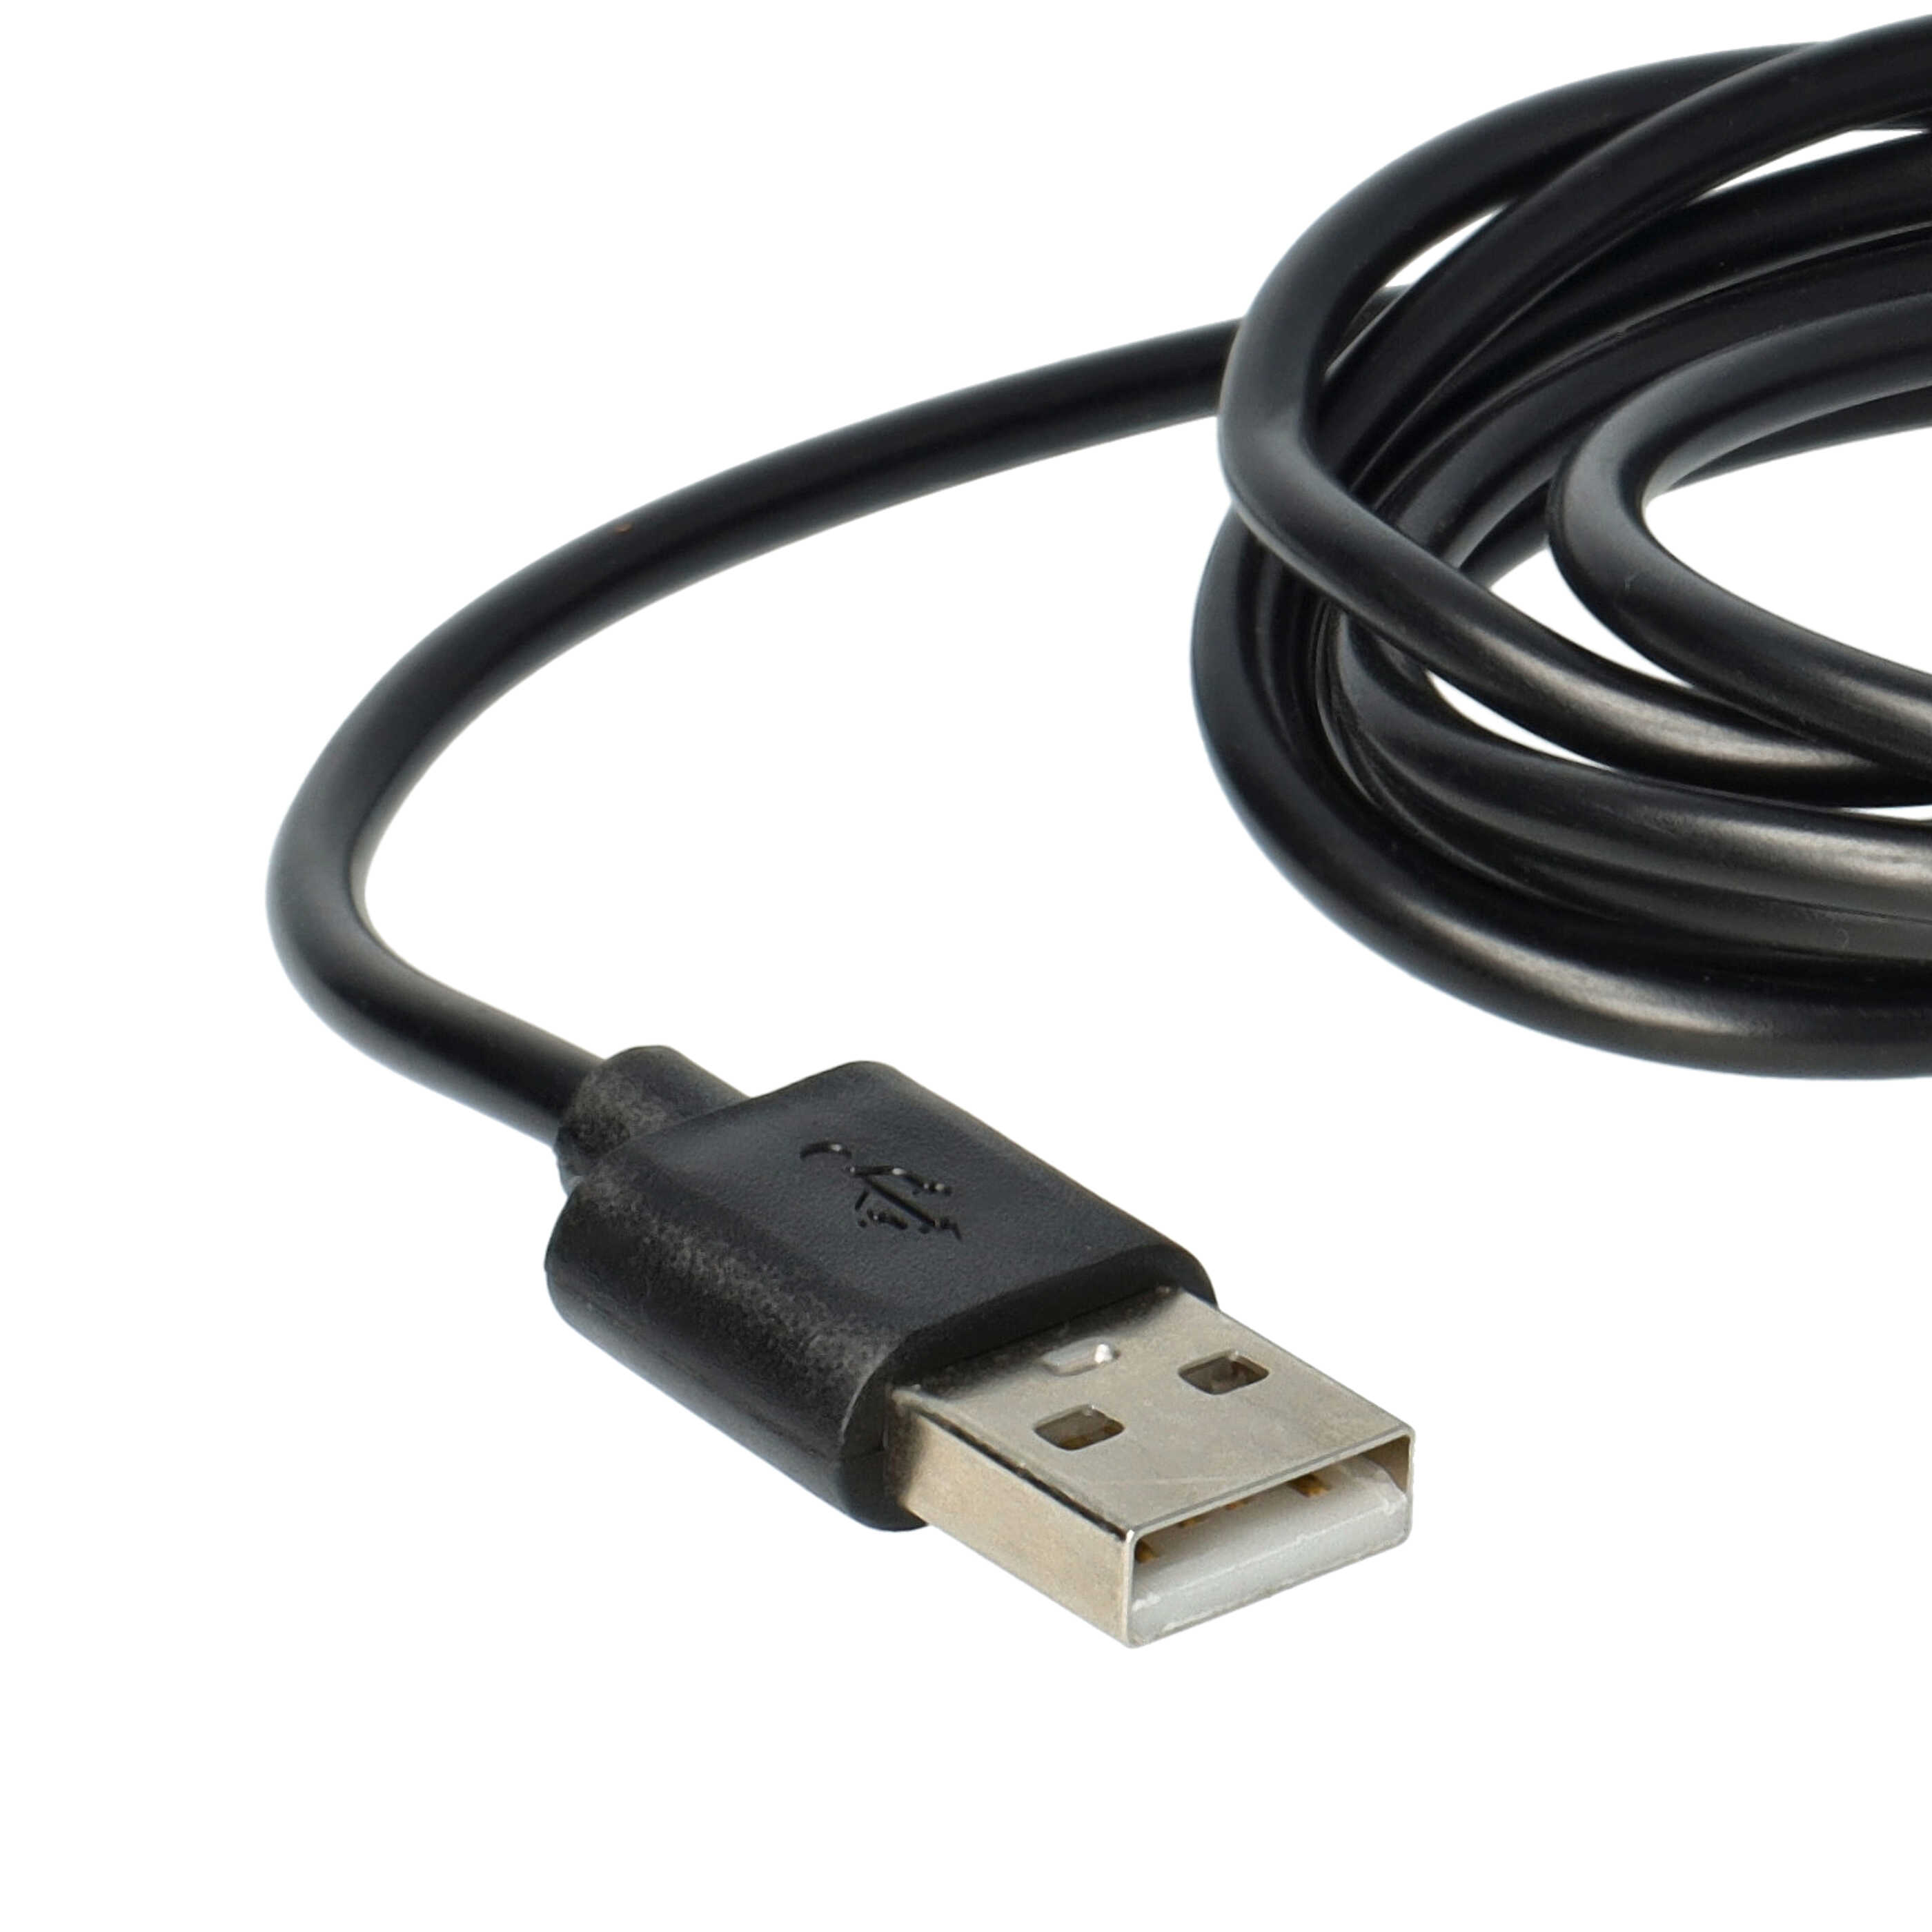 Station USB remplace Sonos Wireless Charger LPS-05WB-I pour enceinte Sonos - socle + câble, 145 cm noir